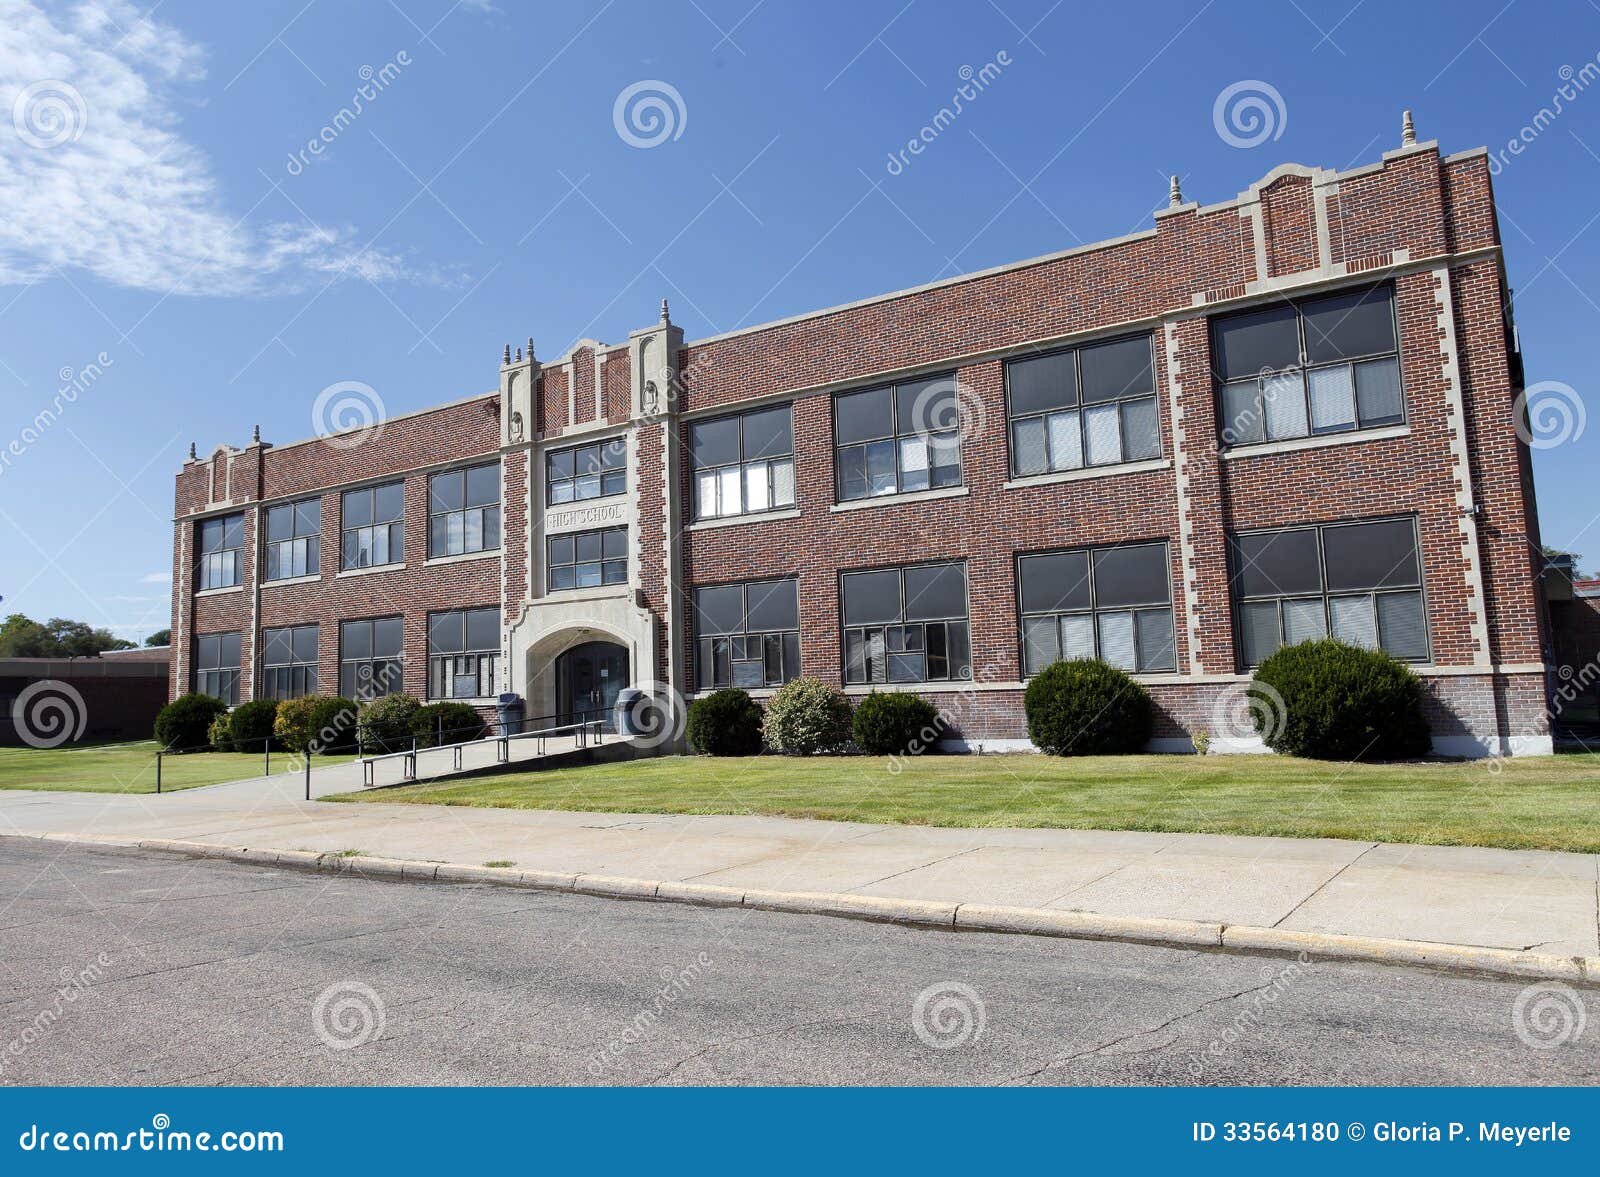 generic high school building